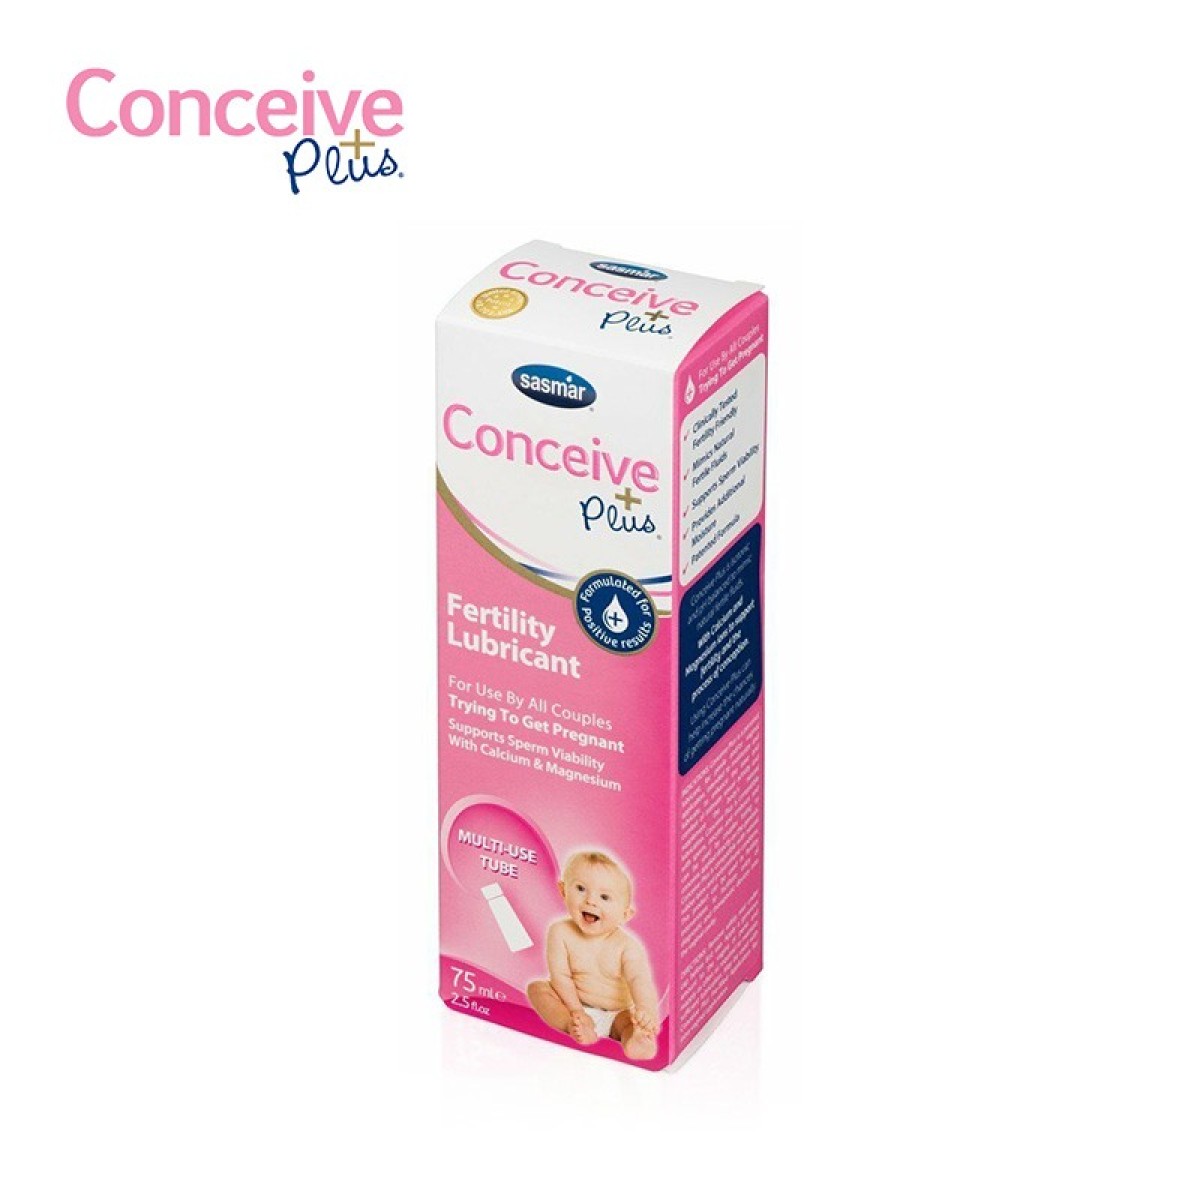 Conceive Plus - Conceive Plus 助孕潤滑劑- Conceive Plus 受孕潤滑劑- Conceive Plus 受孕 潤滑劑送驗孕試紙10條